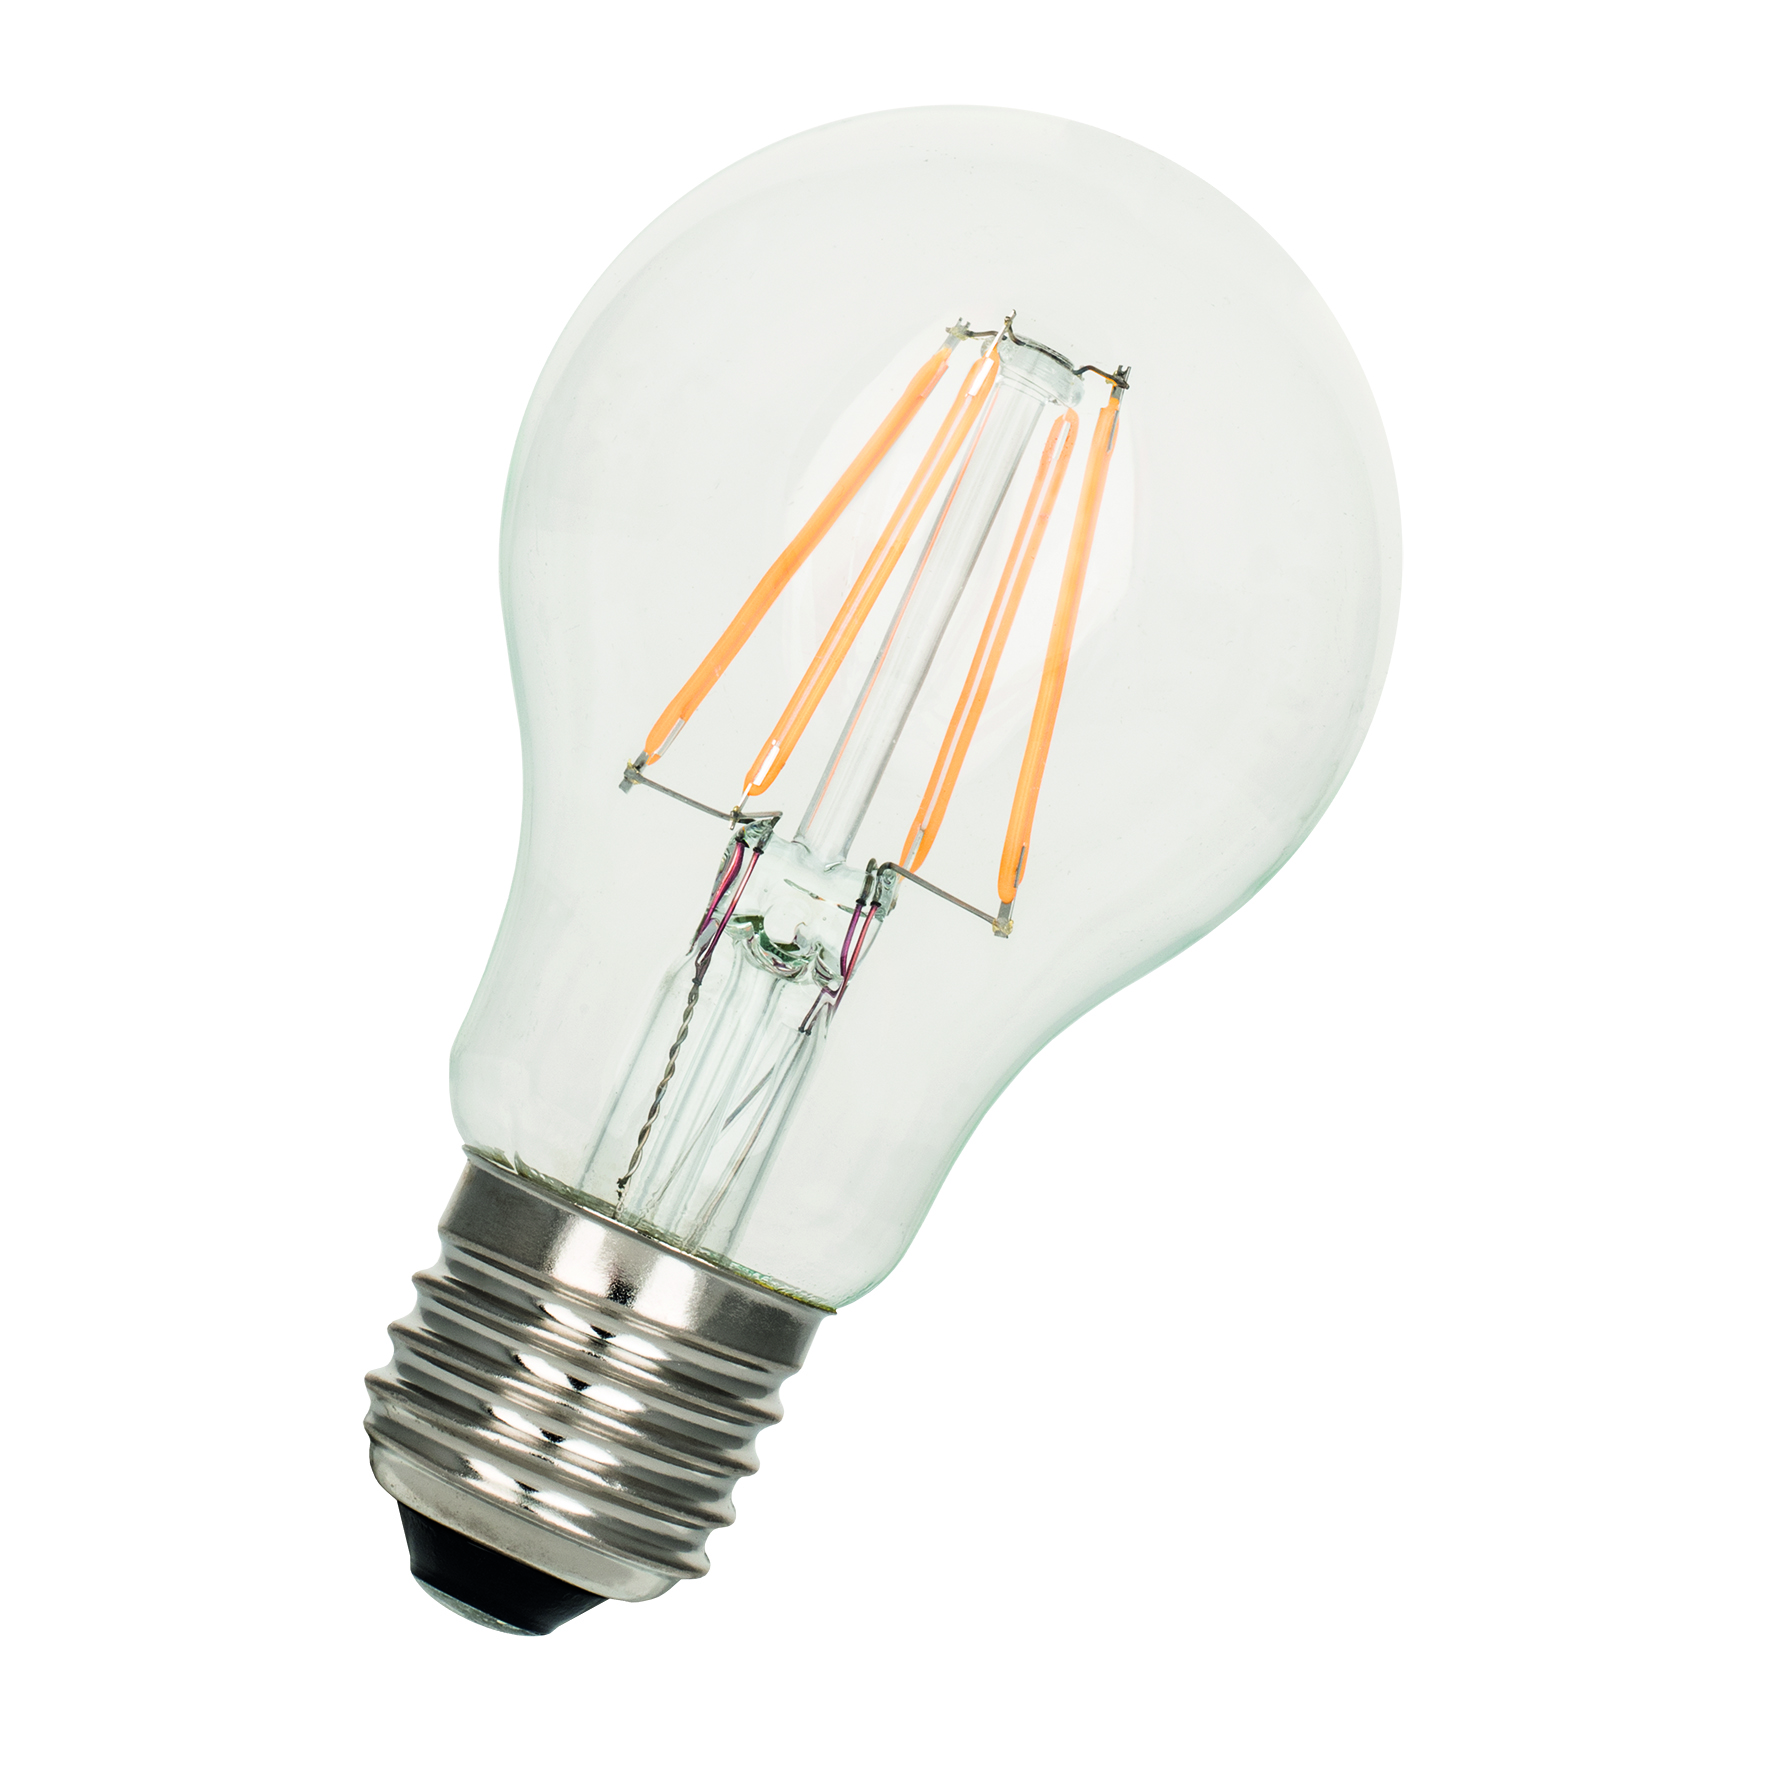 Headlight bulb - BA20D LED 12V, 101W - HI:PE